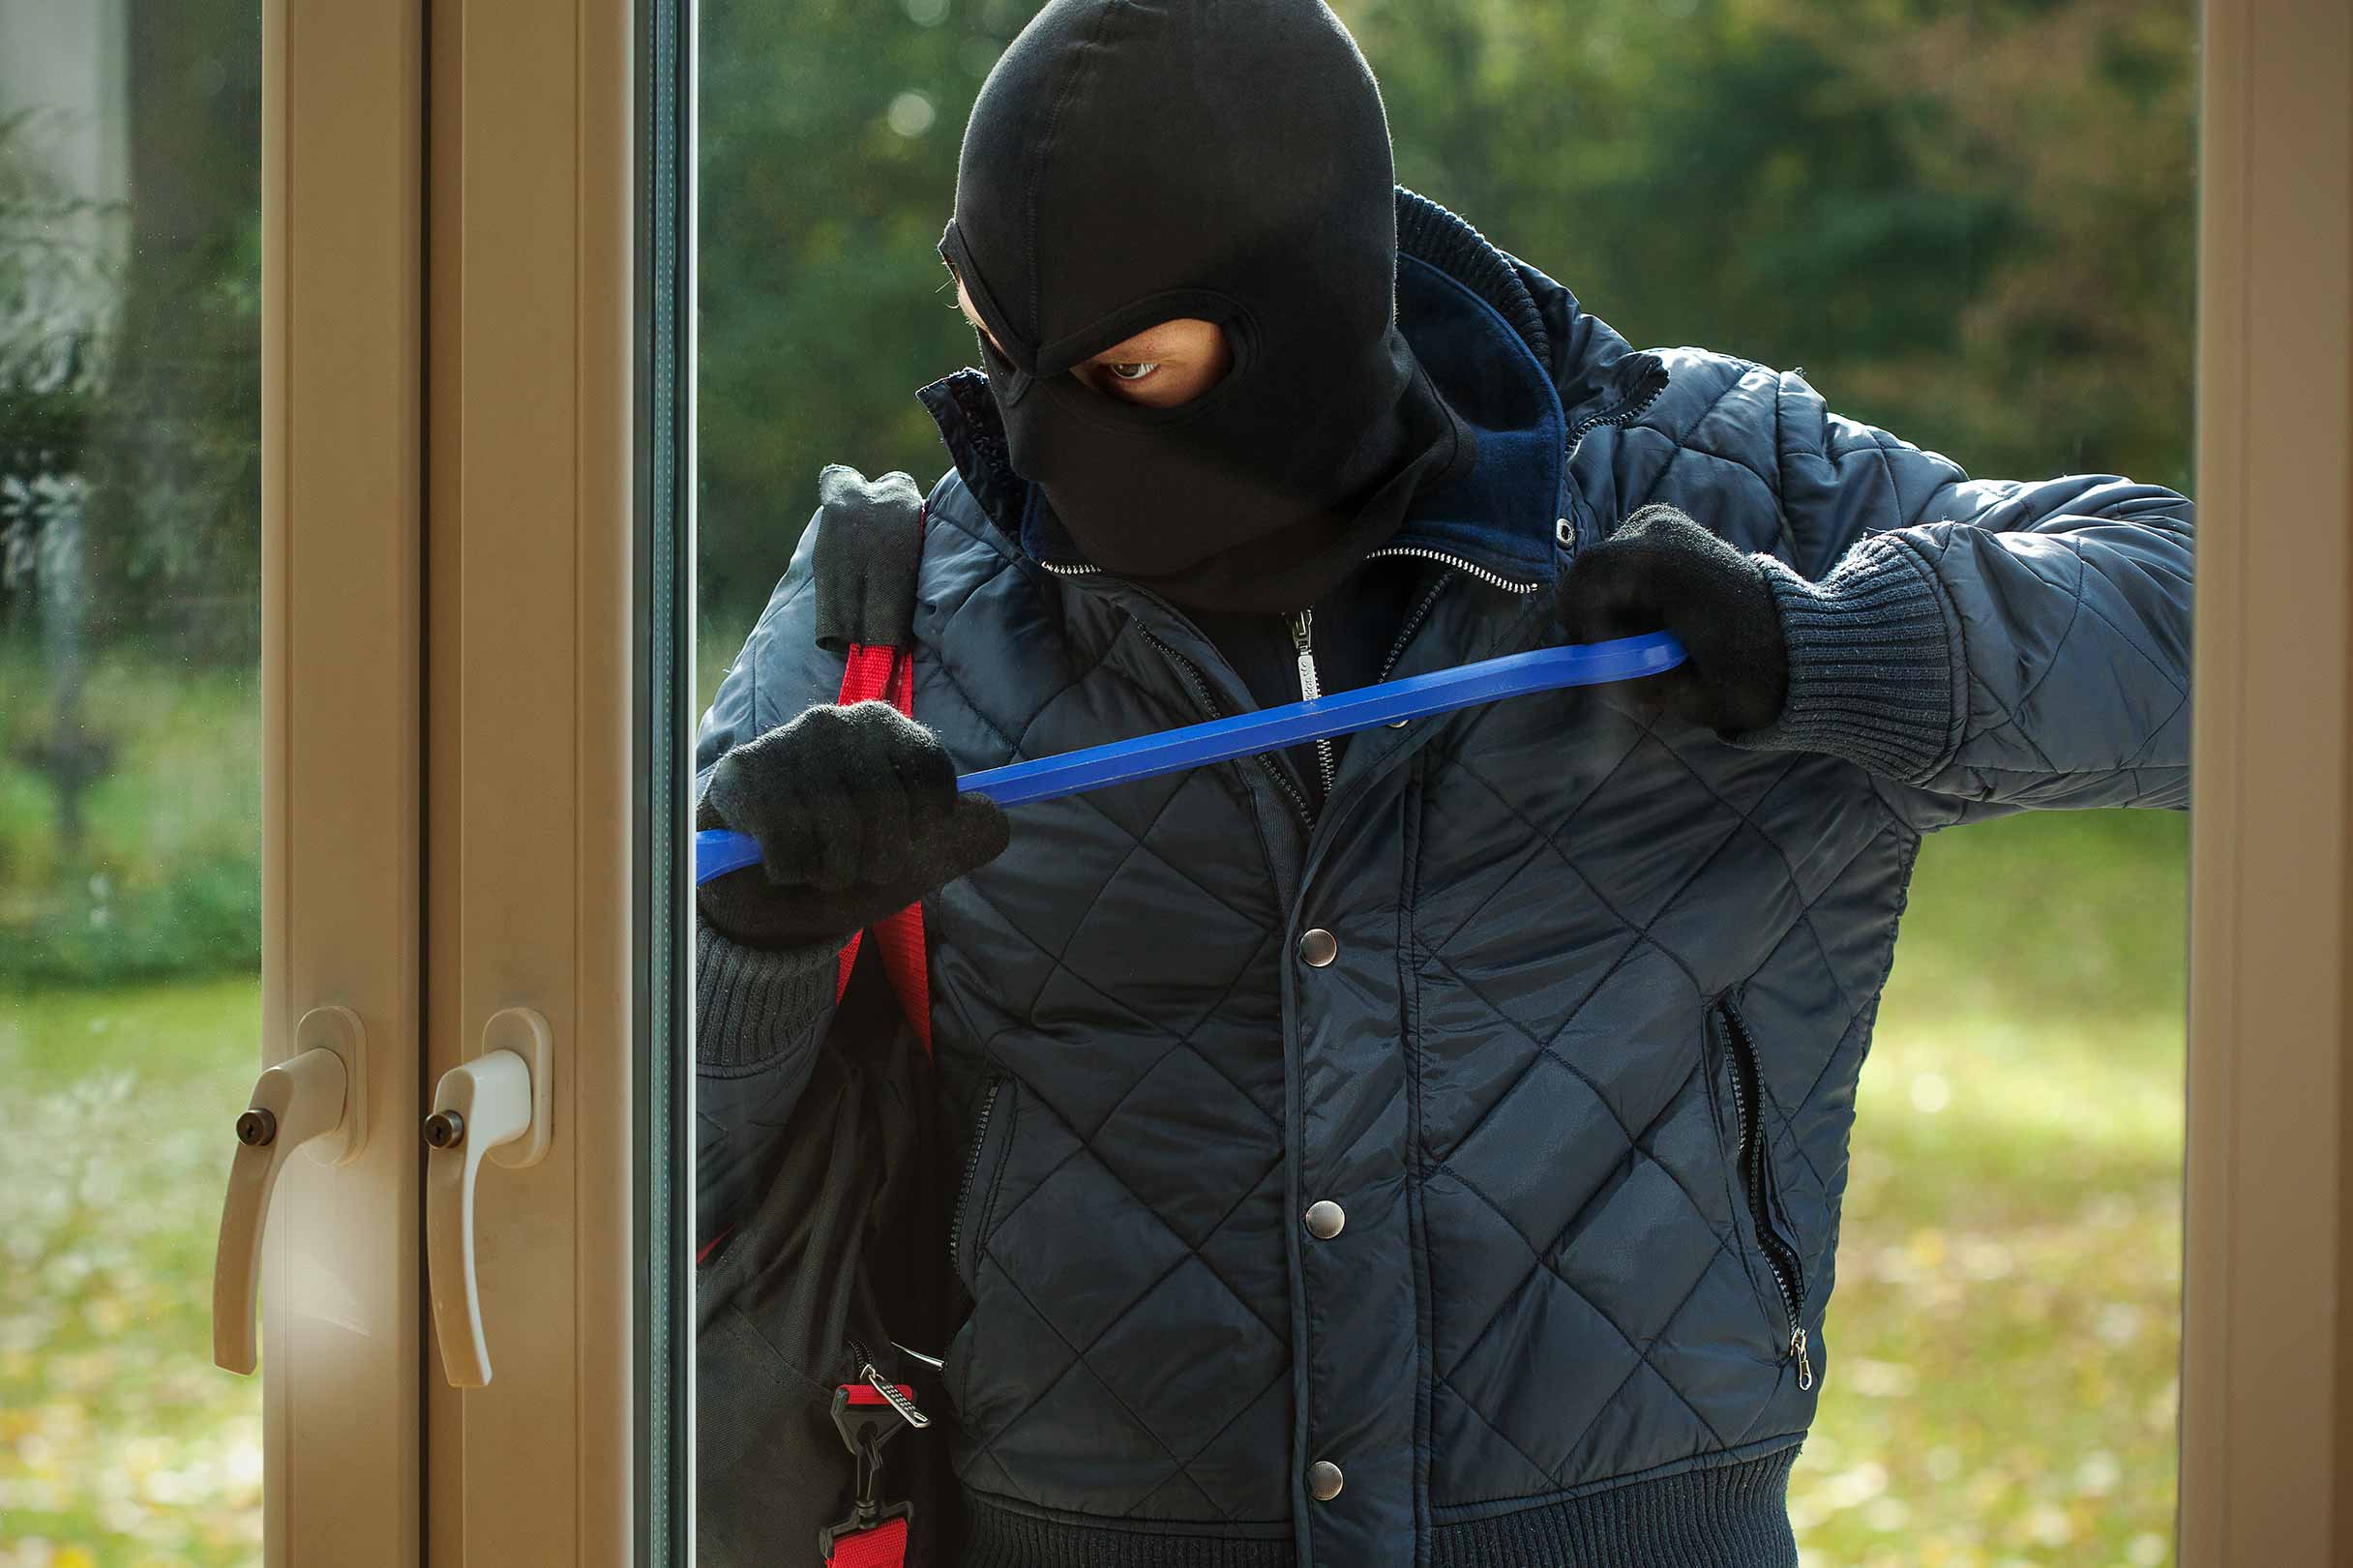 Ein dunkel gekleideter Mann versucht mit einer Brechstange eine Tür zu einem Haus aufzubrechen, um dort einzubrechen.